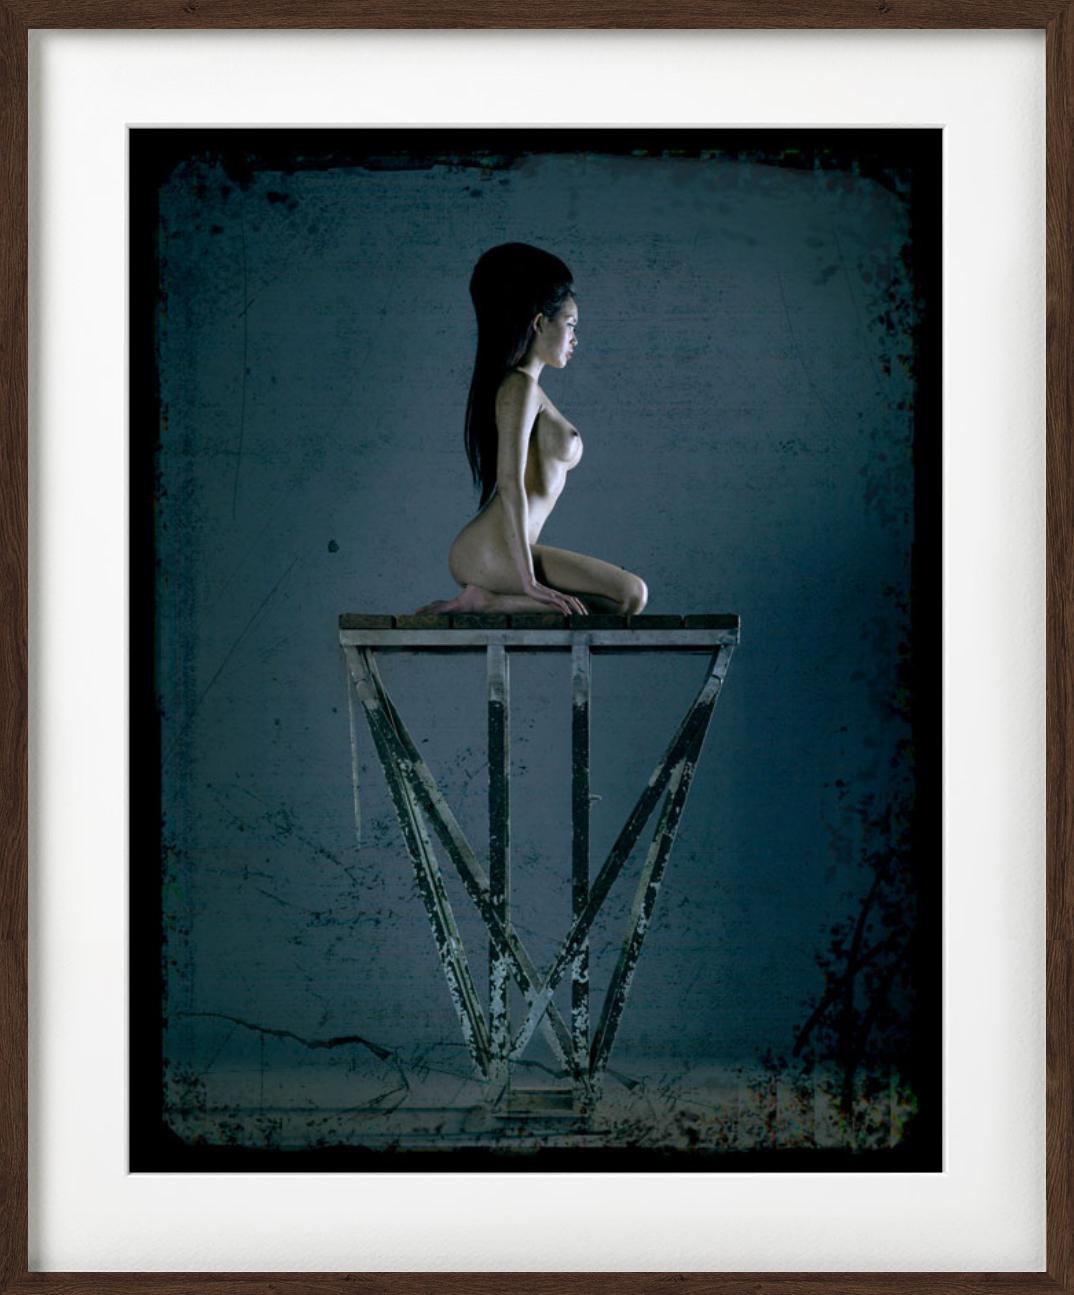 „Erotic Nude #4268“ – Akt in Blau auf einer Plattform, Kunstfotografie, 2010 – Photograph von Andreas H. Bitesnich